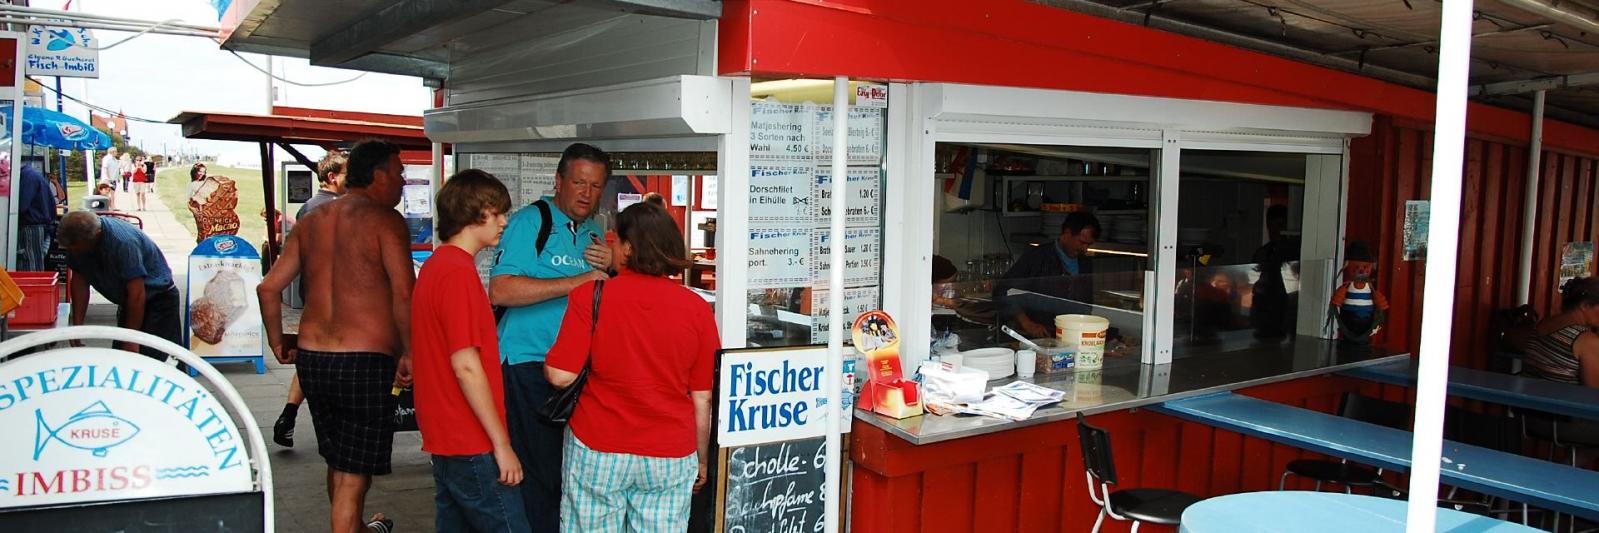 Fischerhütten am Schönberger-Strand - Fischer Kruse